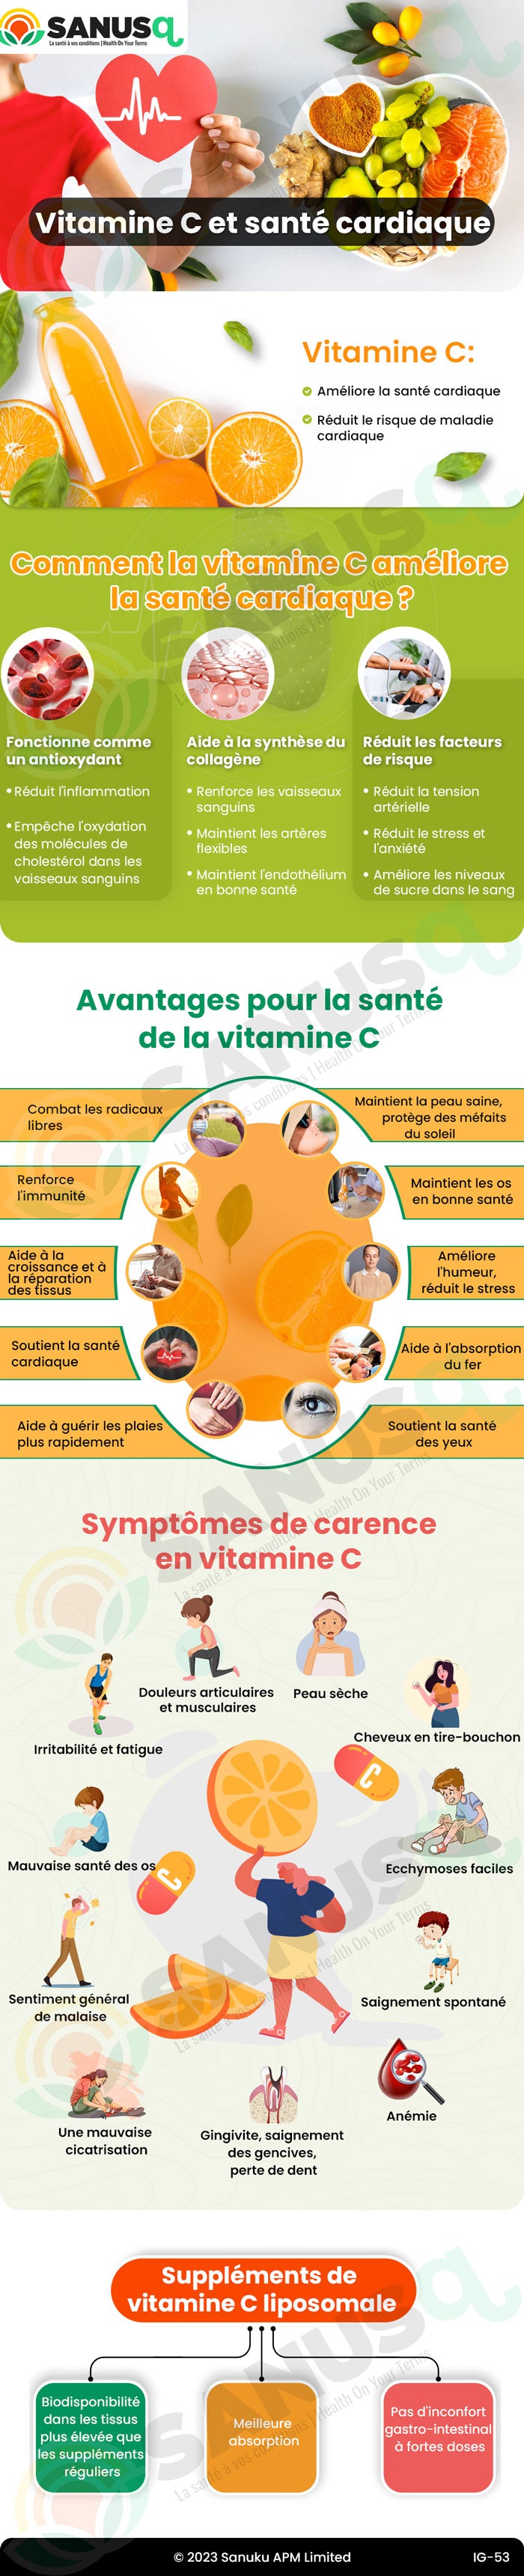 Les bienfaits de la vitamine C pour la santé du cœur